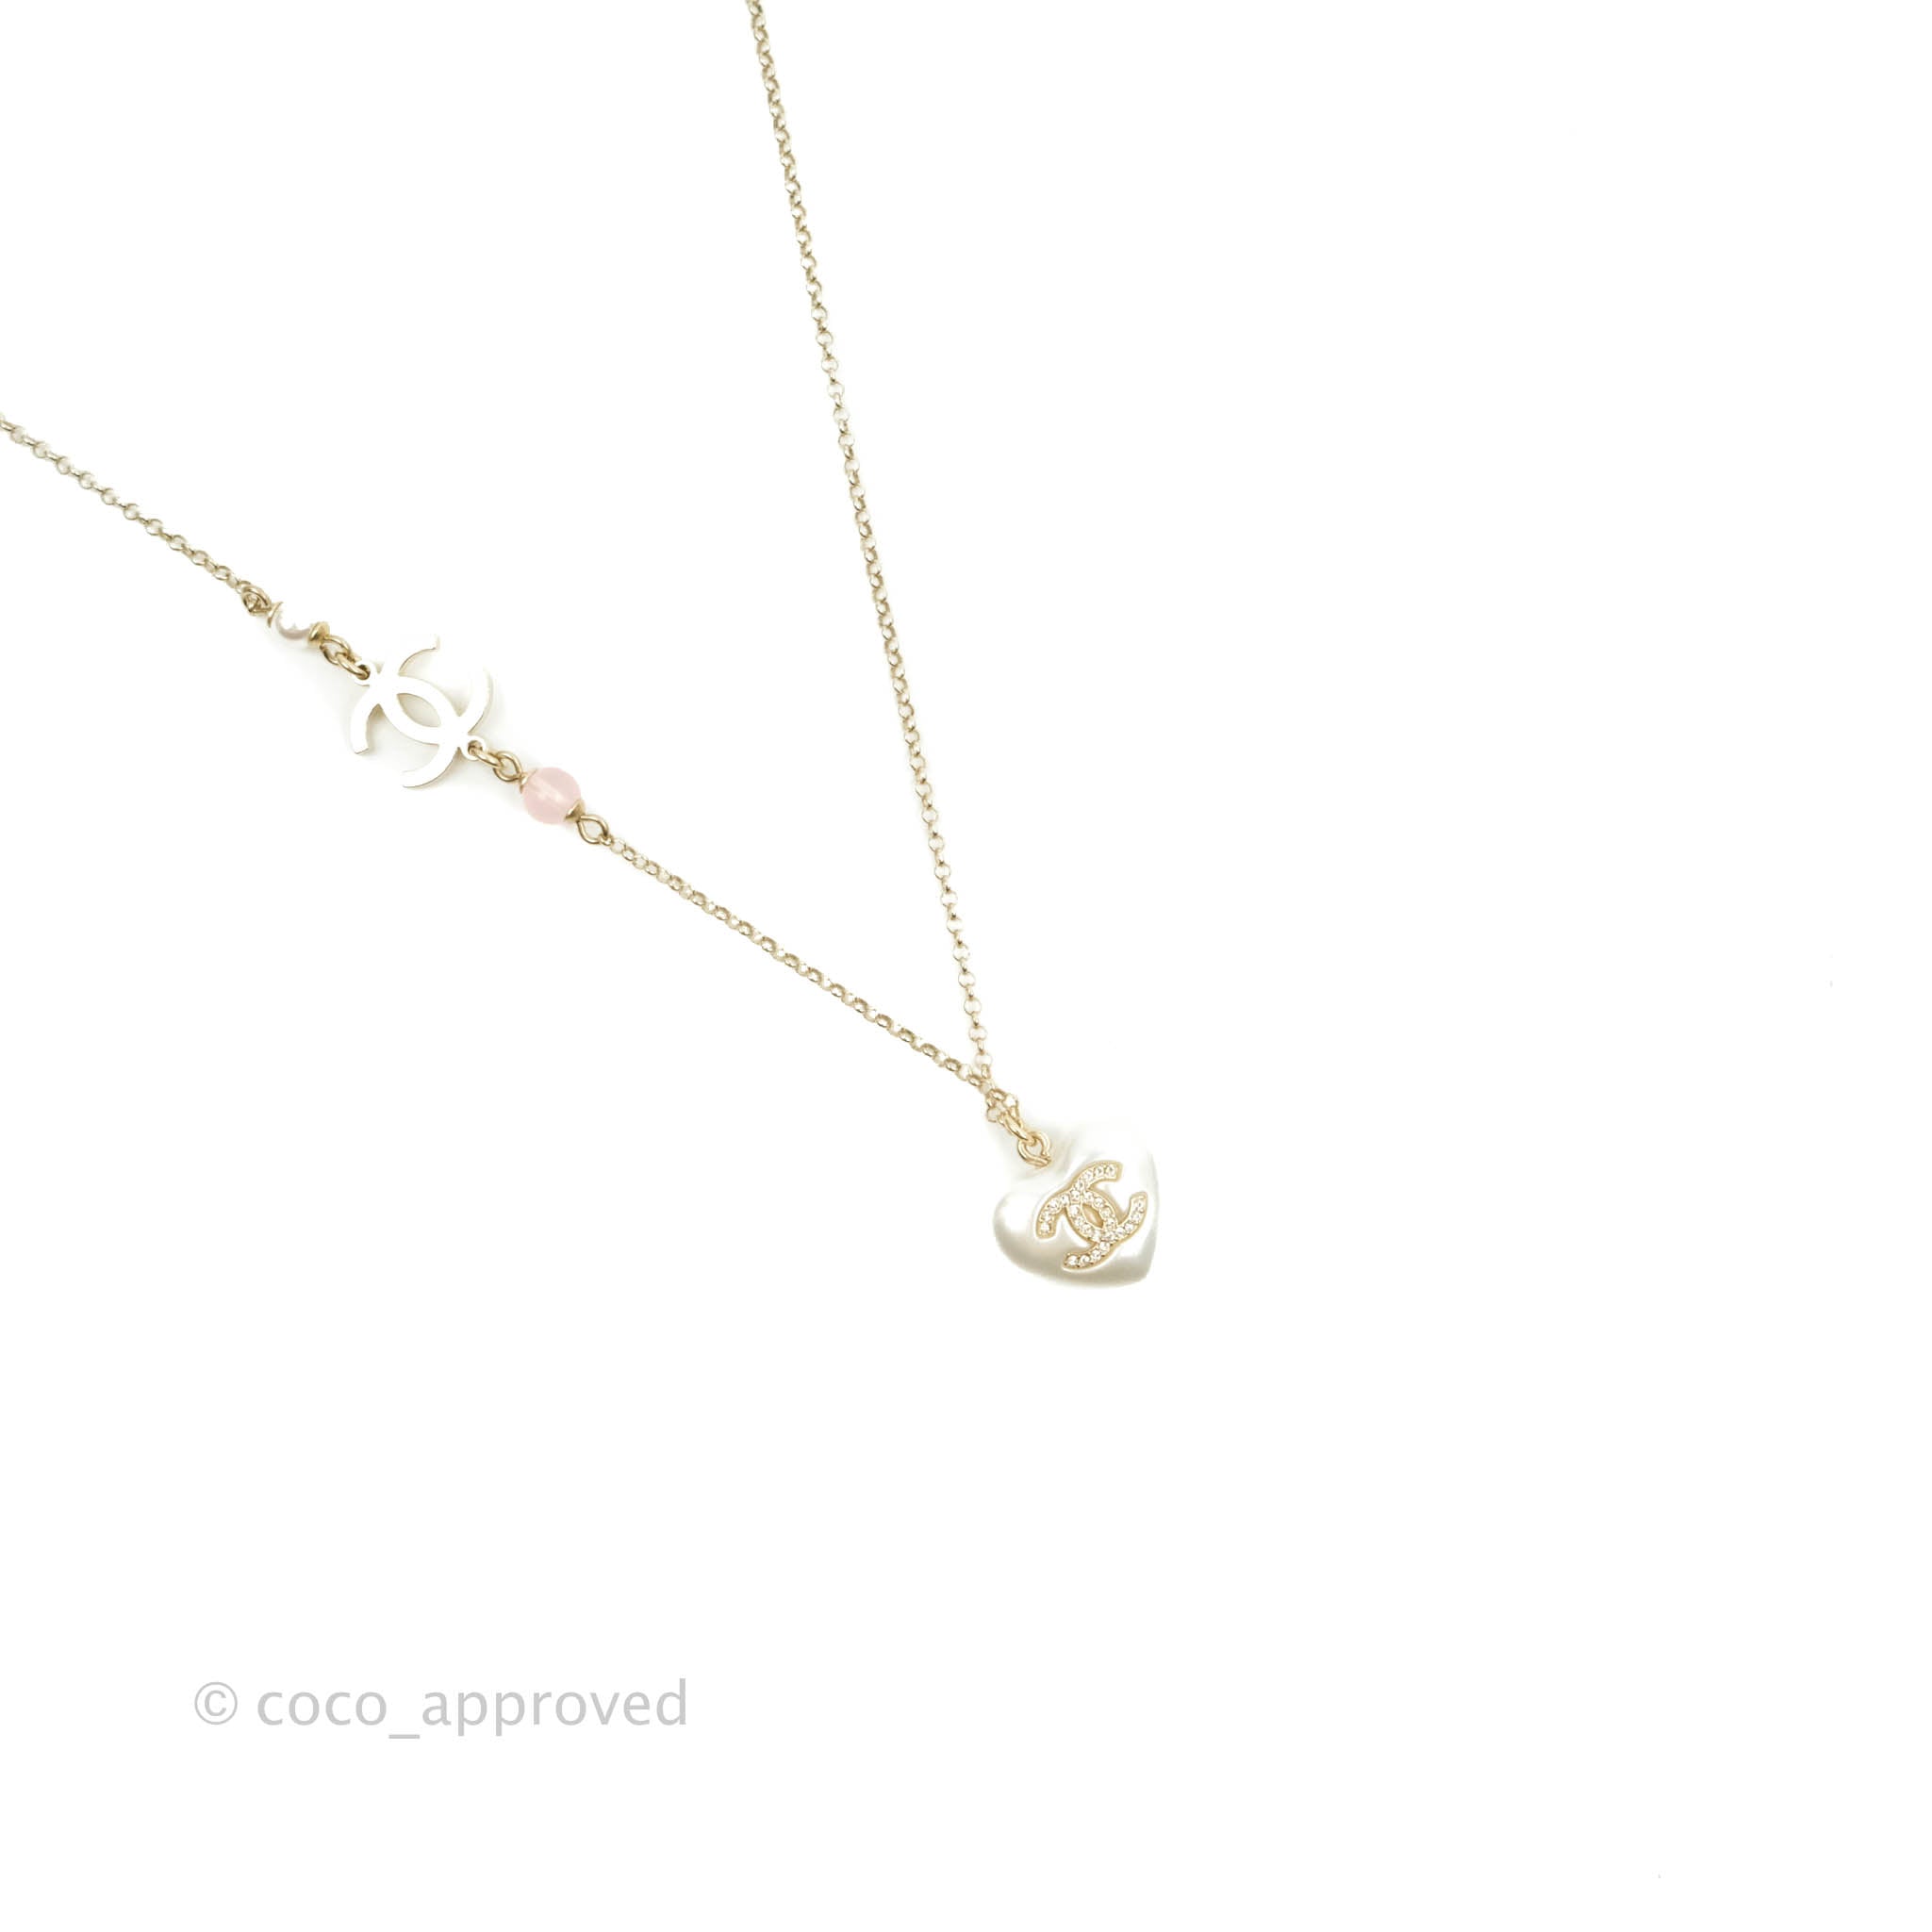 Sold at Auction: Louis Vuitton, Louis Vuitton Flower, heart & padlock  pendant on leather necklace